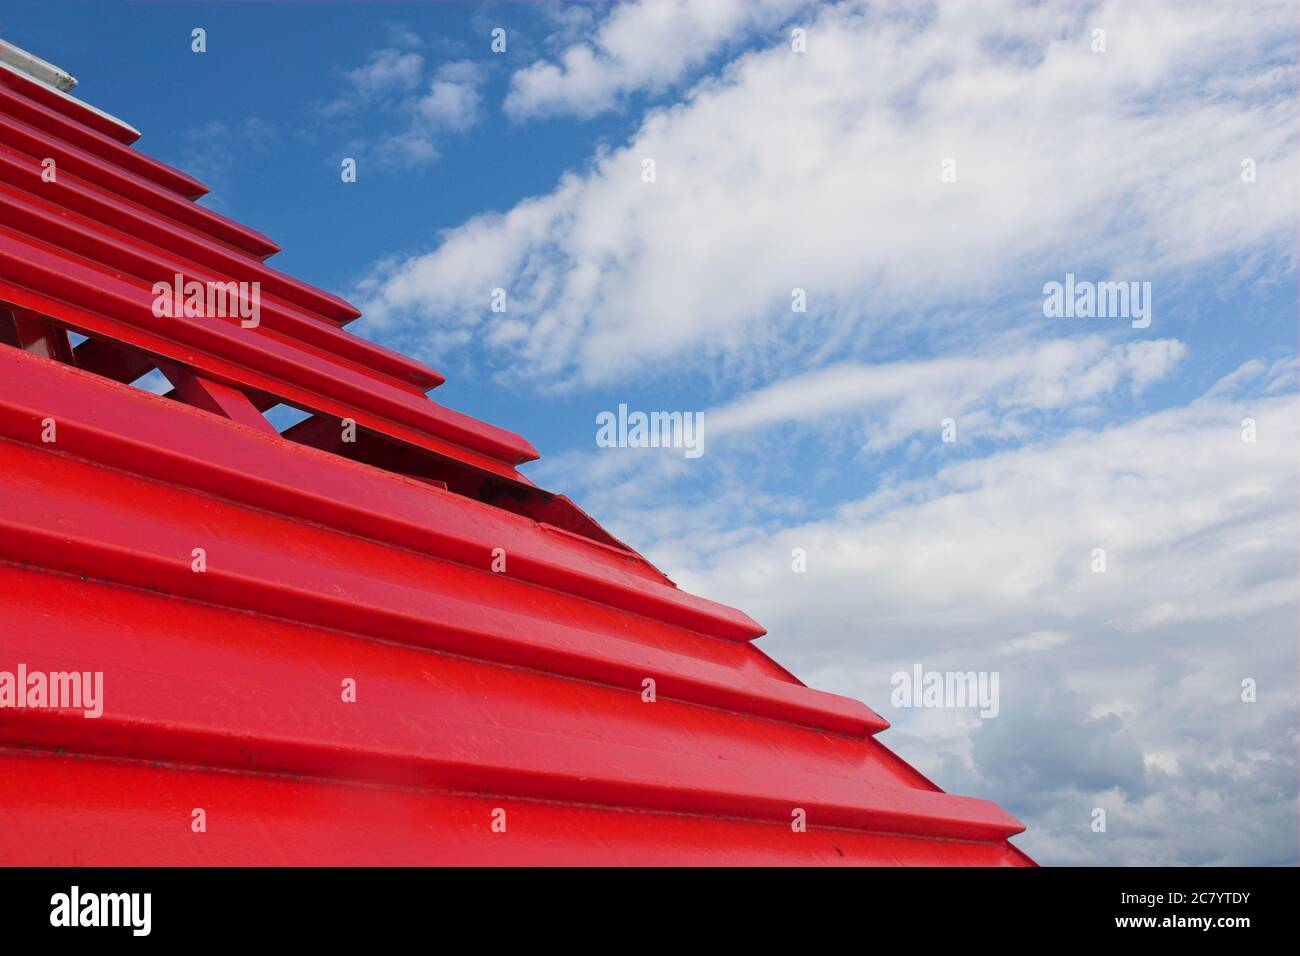 Astratto formato da un'otturazione rossa brillante sulle parti in lavorazione su un traghetto Foto Stock